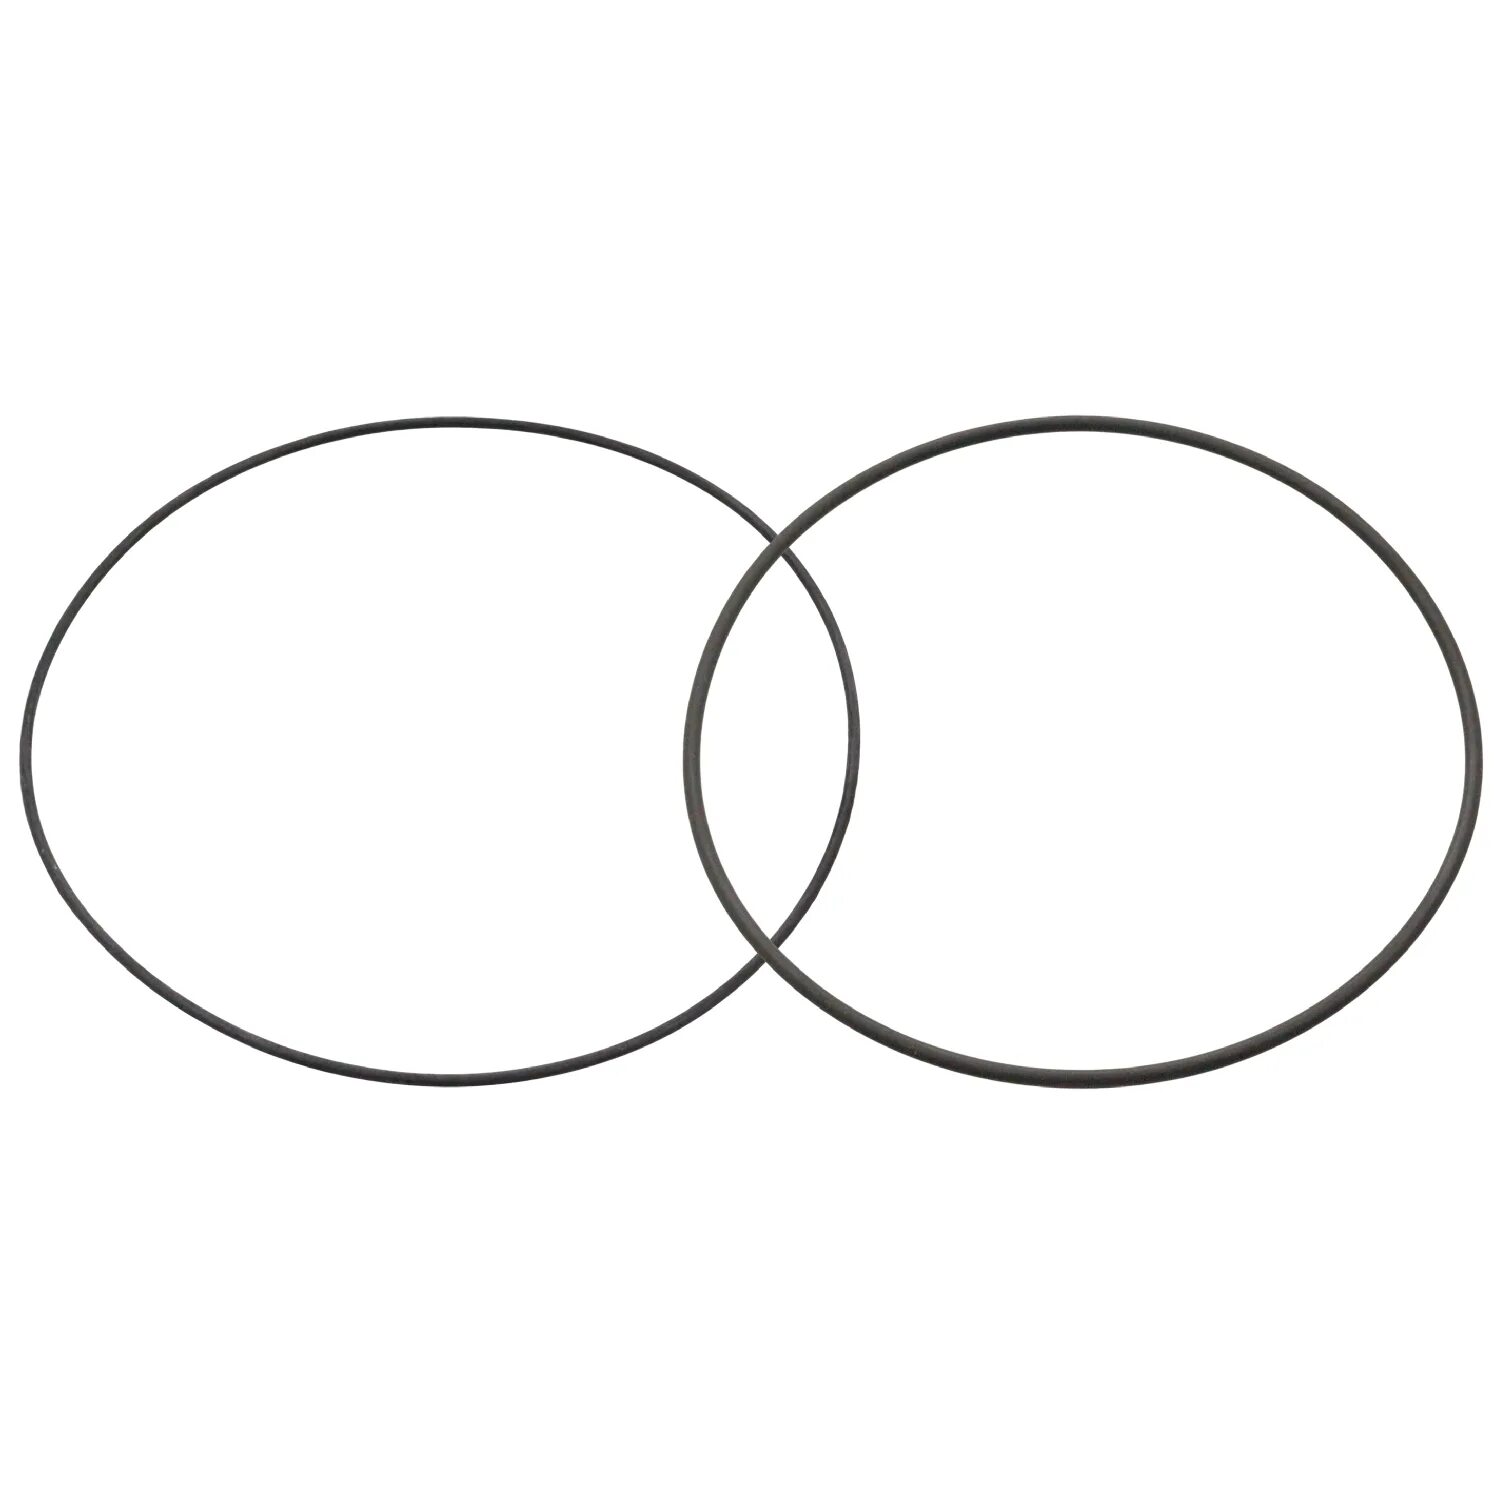 Круги едят других кругов. Две пересекающиеся окружности. Два пересекающихся круга. Два пересекающихся круга символ. Пересечение кругов.